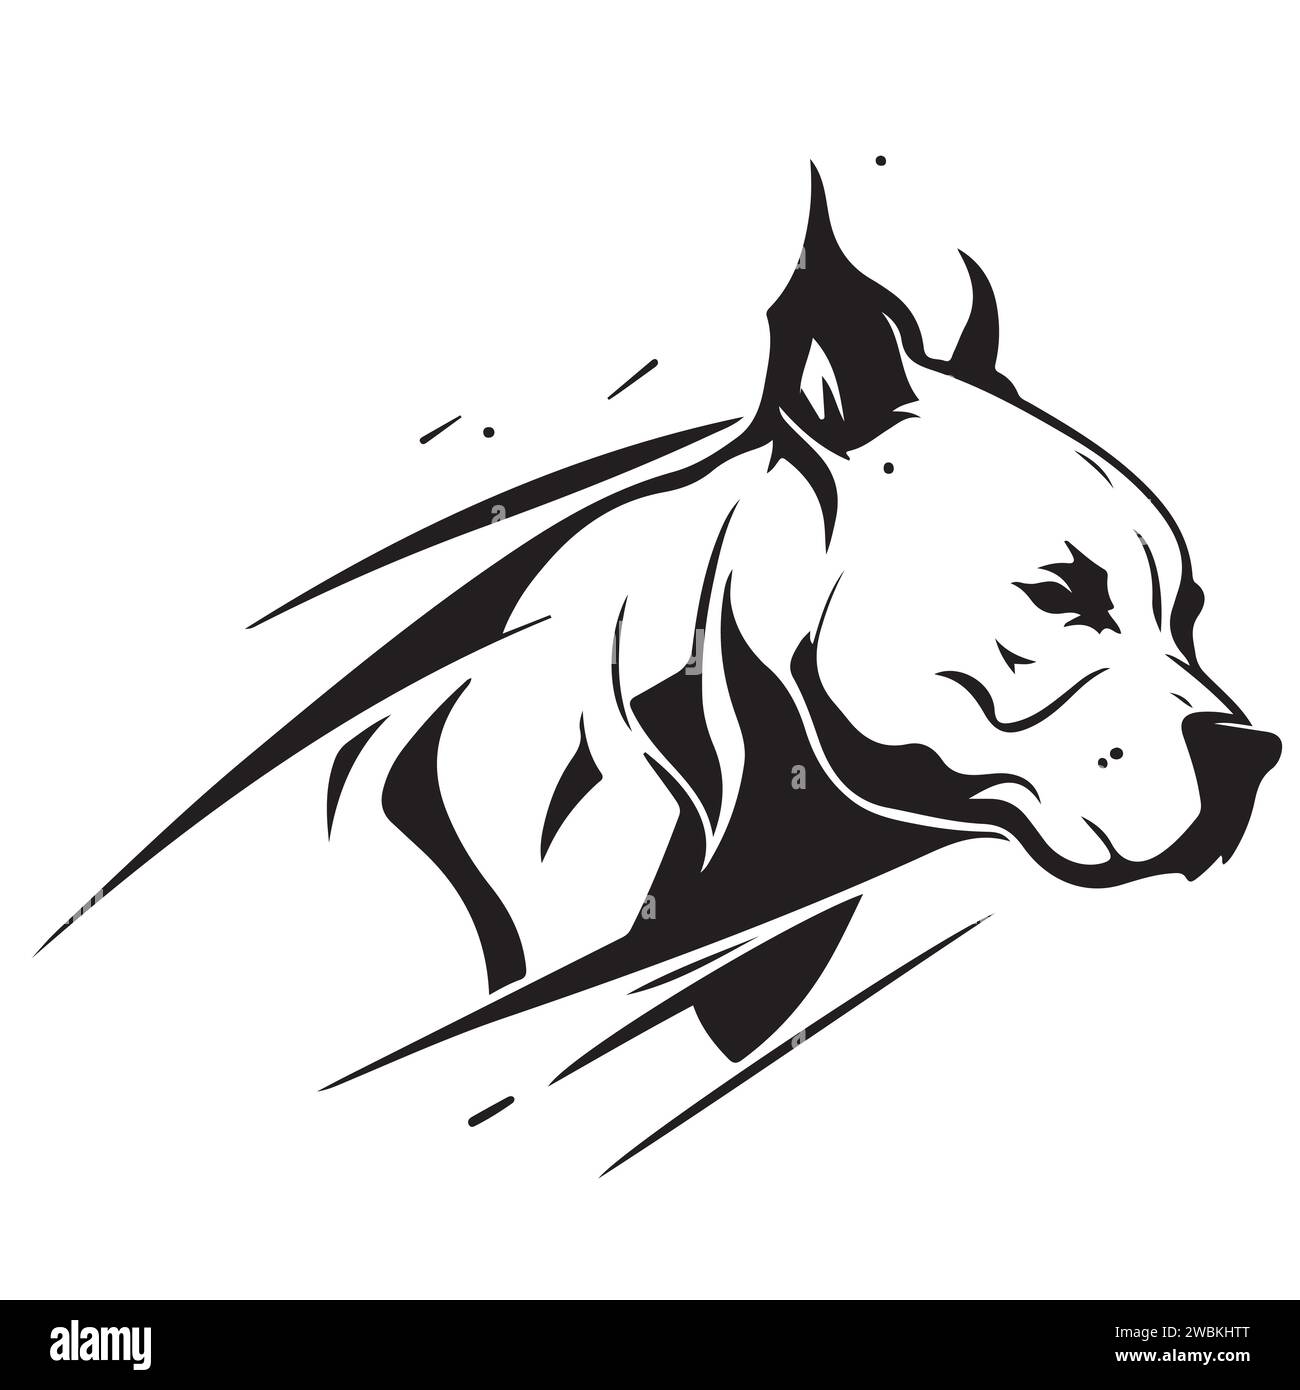 Modèle vectoriel de conception d'illustration de logo de chien. Illustration vectorielle Illustration de Vecteur